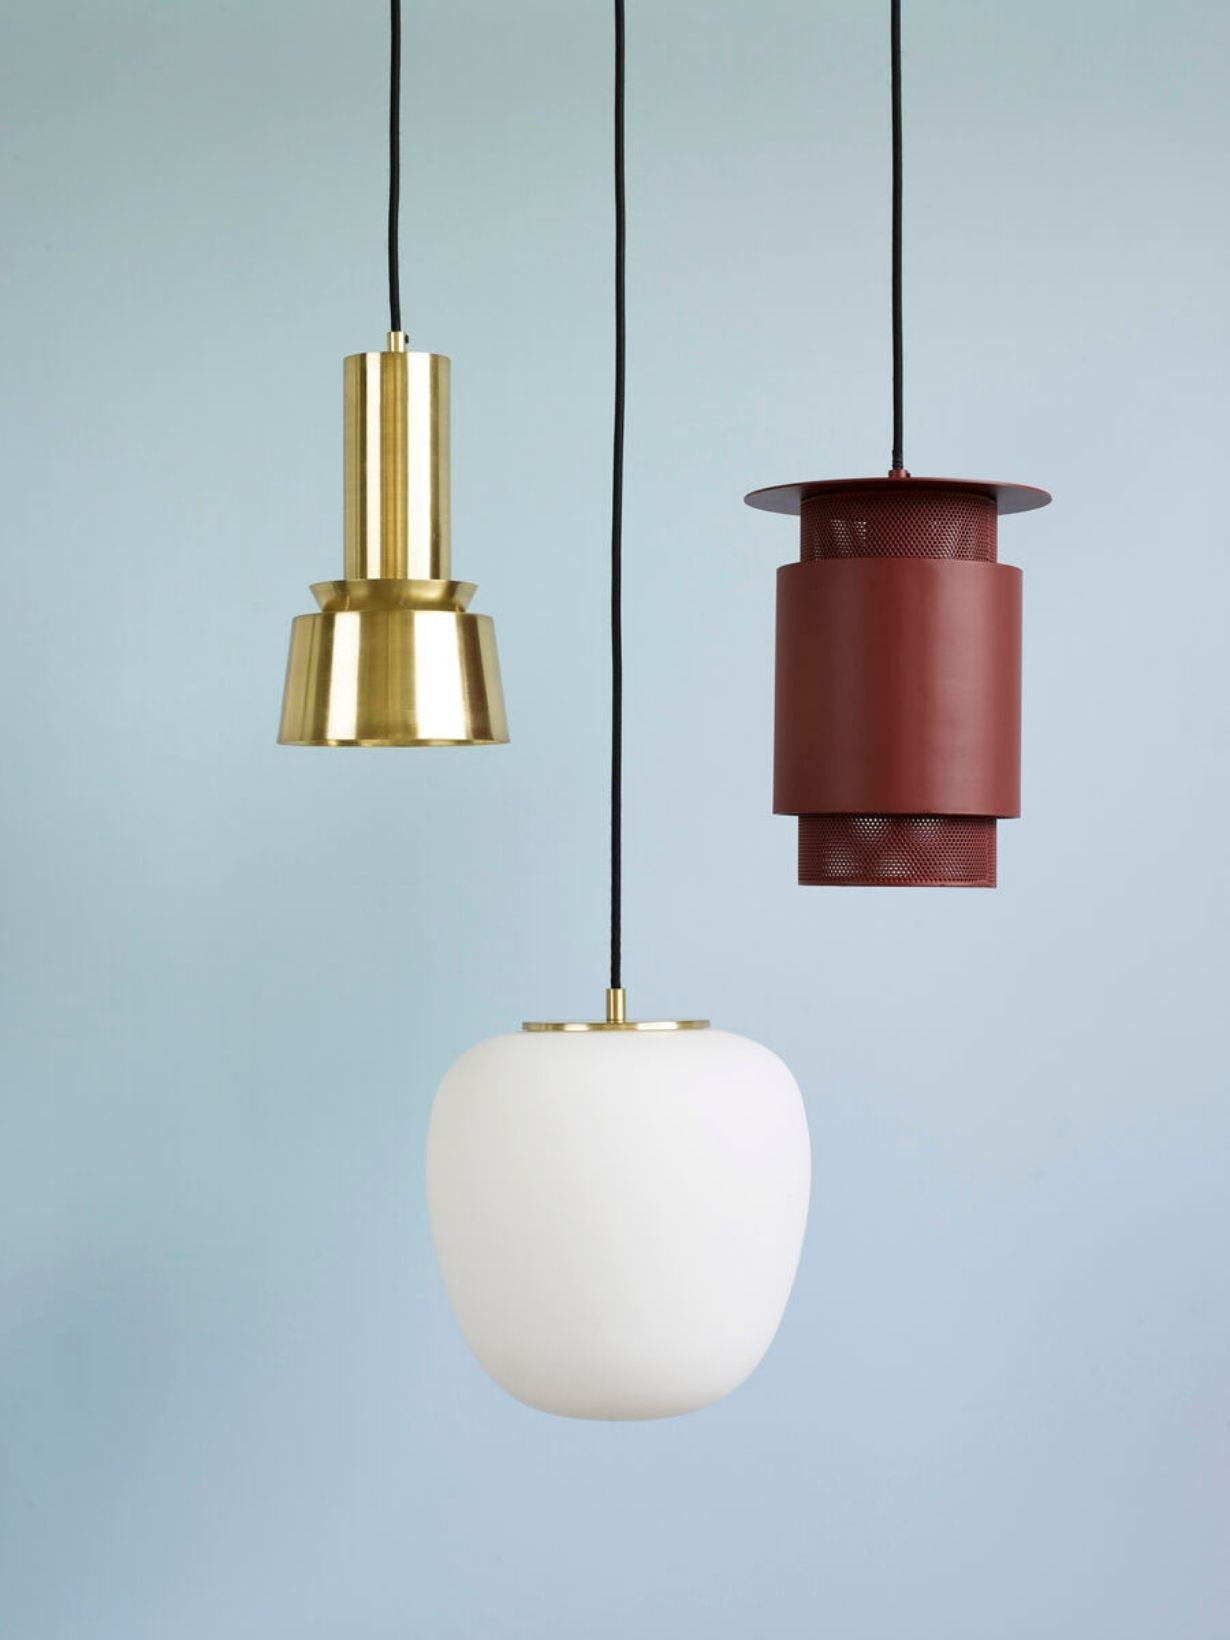 Glass hanging lamp, Kai Hubsch